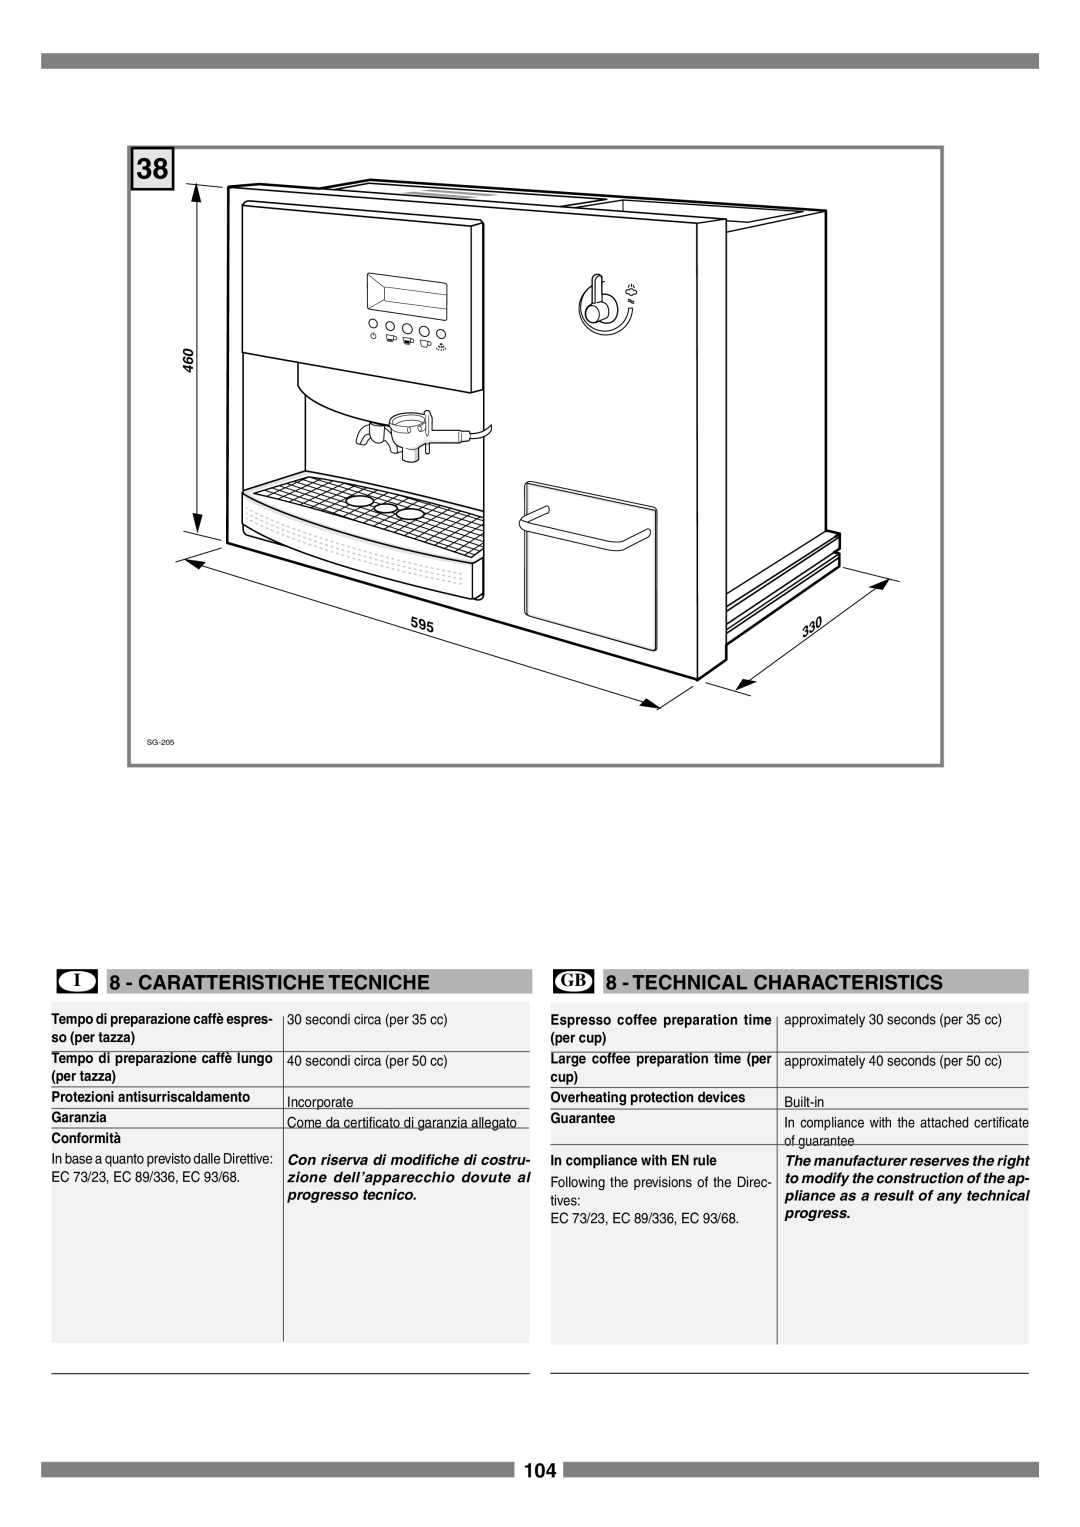 Smeg SCM1 manual I 8 - CARATTERISTICHE TECNICHE, GB 8 - TECHNICAL CHARACTERISTICS, Tempo di preparazione caffè lungo 